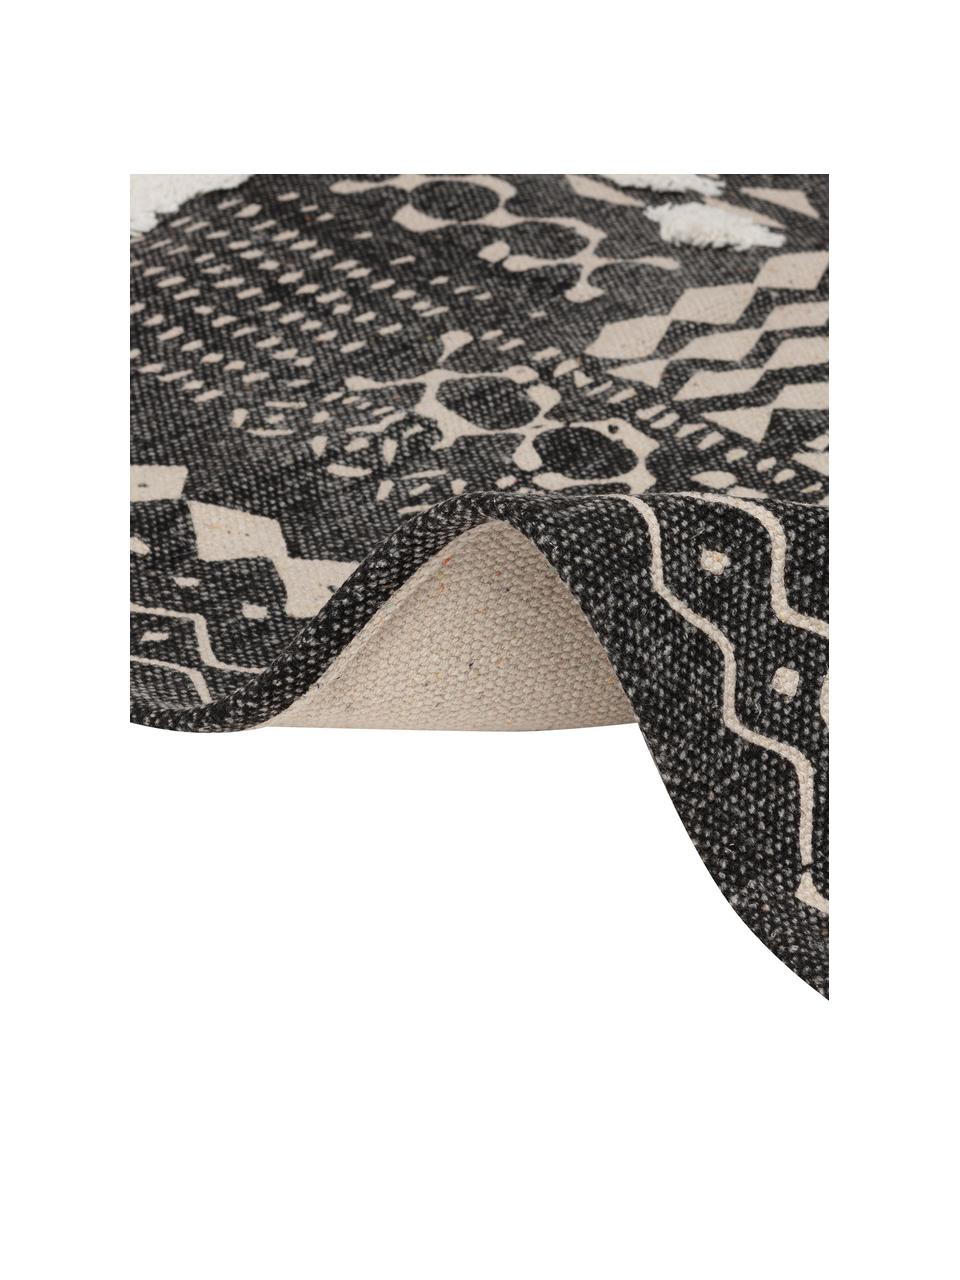 Tappeto boho in cotone con motivo a rilievo nero/bianco Boa, 100% cotone, Nero, bianco, Larg. 60 x Lung. 190 cm